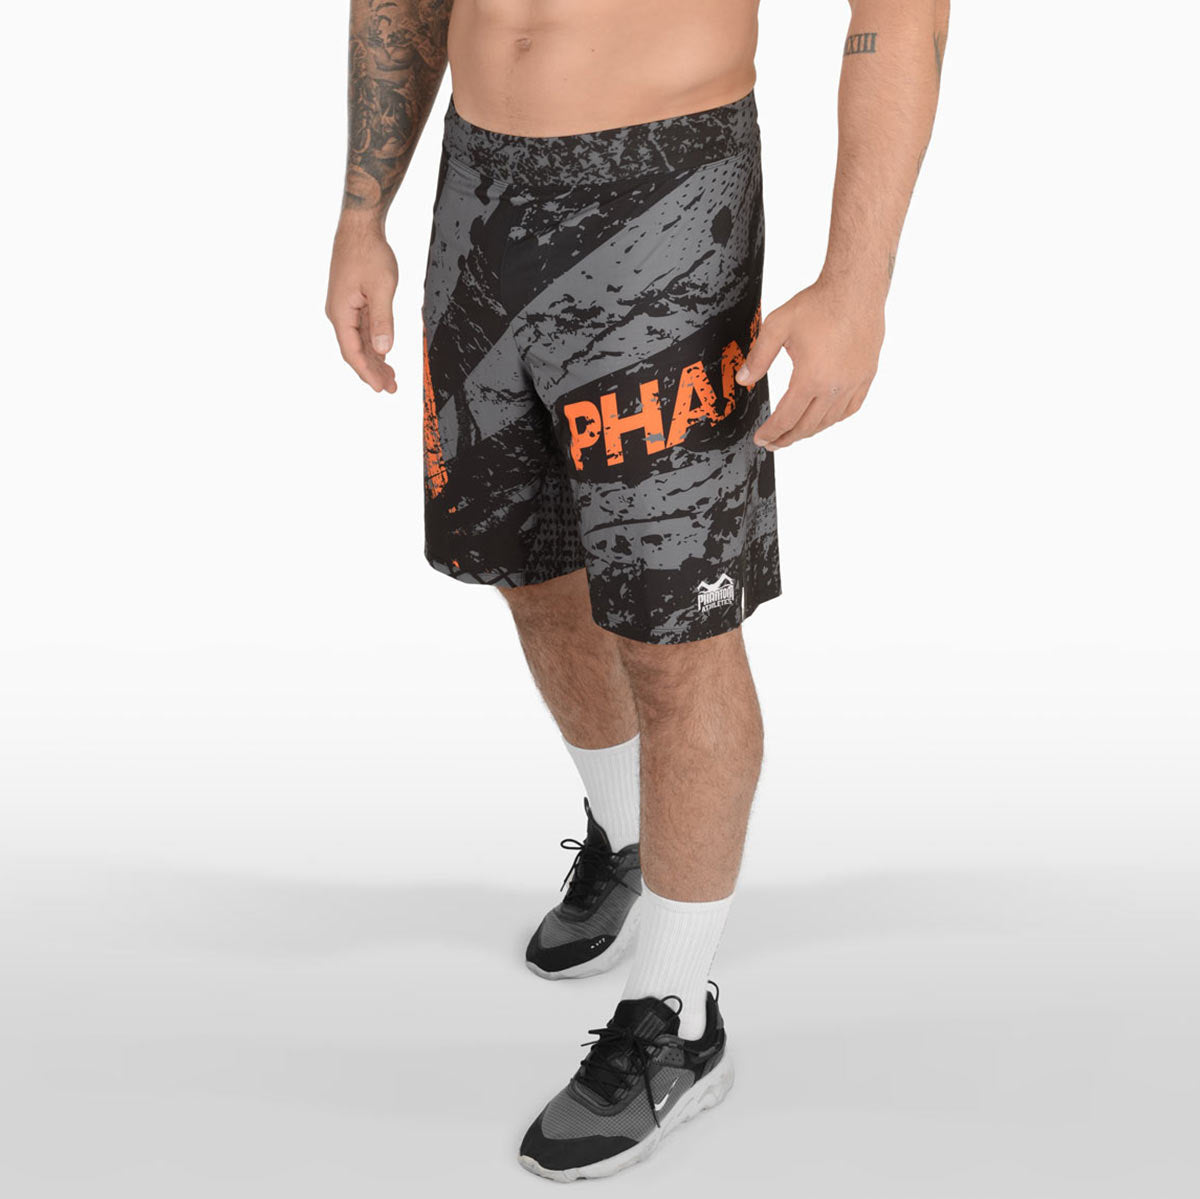 Phantom FLEX kovos šortai yra vieni geriausių kovos šortų rinkoje. Itin lengvas, itin lankstus ir atsparus plyšimui. Sumažintas iki absoliutaus minimumo, jis siūlo maksimalų kovos menų našumą. Nesvarbu, ar BJJ, MMA, Muay Thai ar kikboksas. FLEX šortai iš Phantom Athletics išryškina geriausias jūsų savybes. Čia yra oranžinės spalvos purslų dizainas.